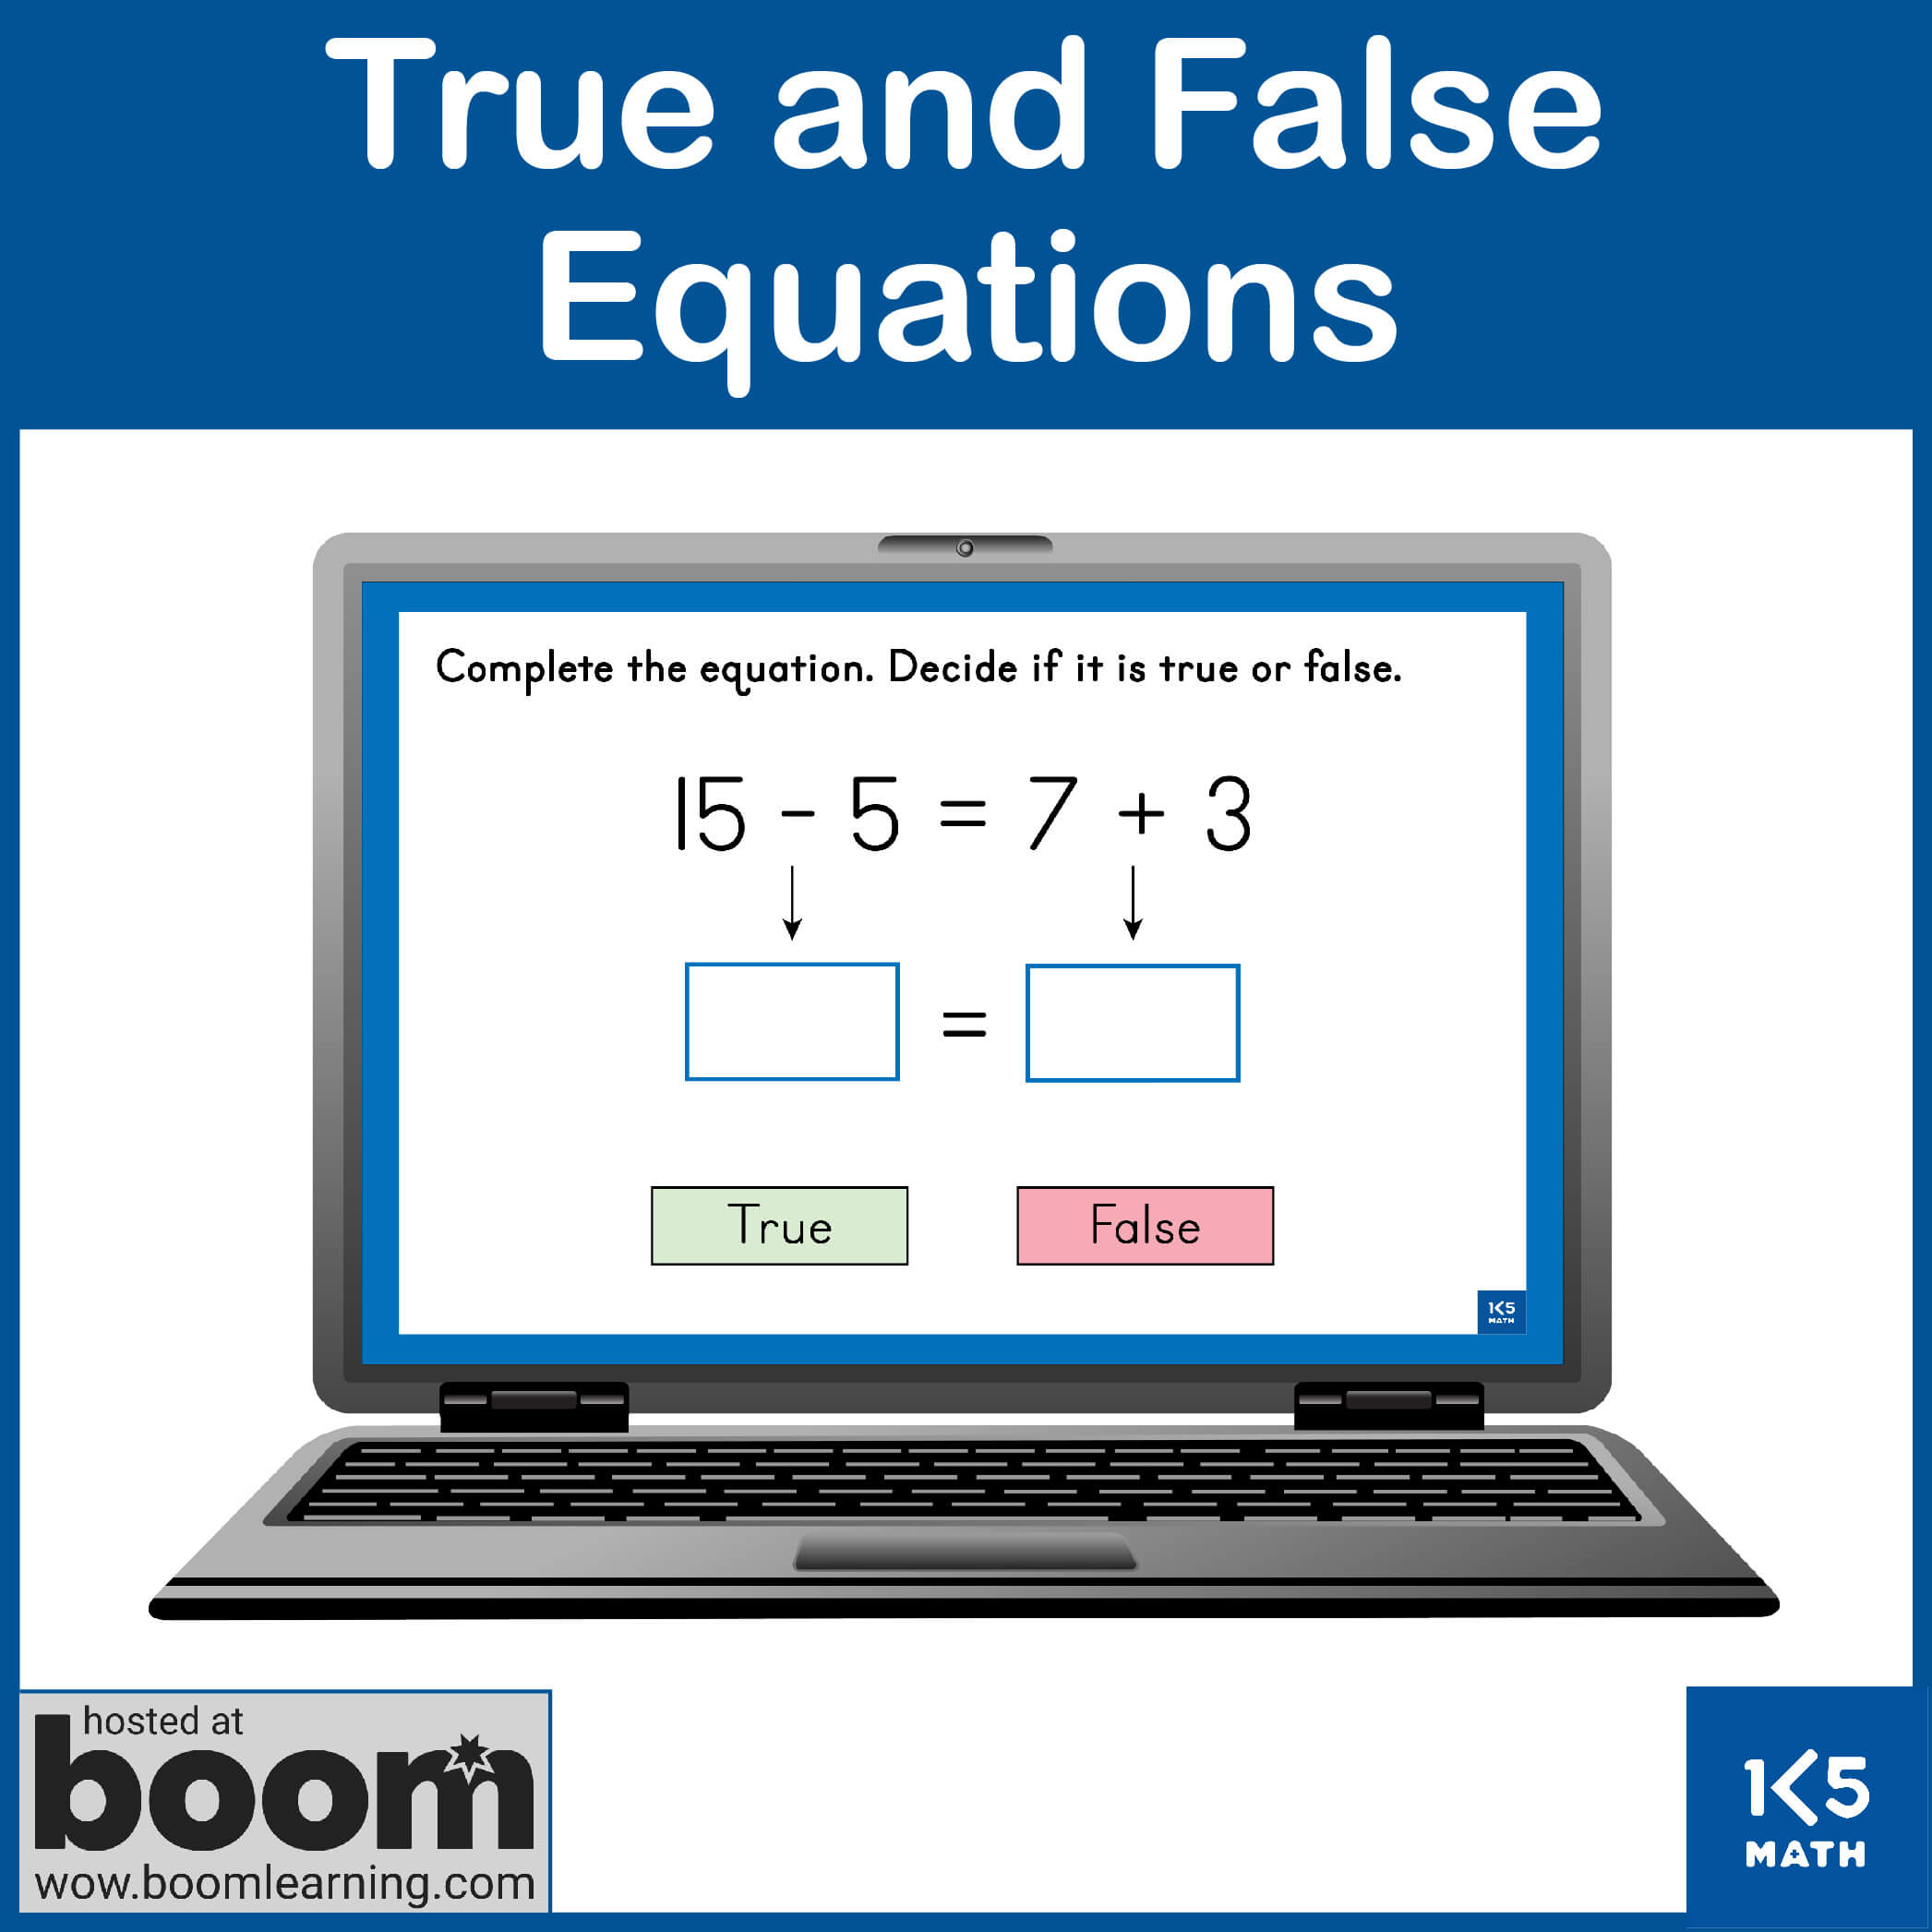 Boom Cards: True and False Equations